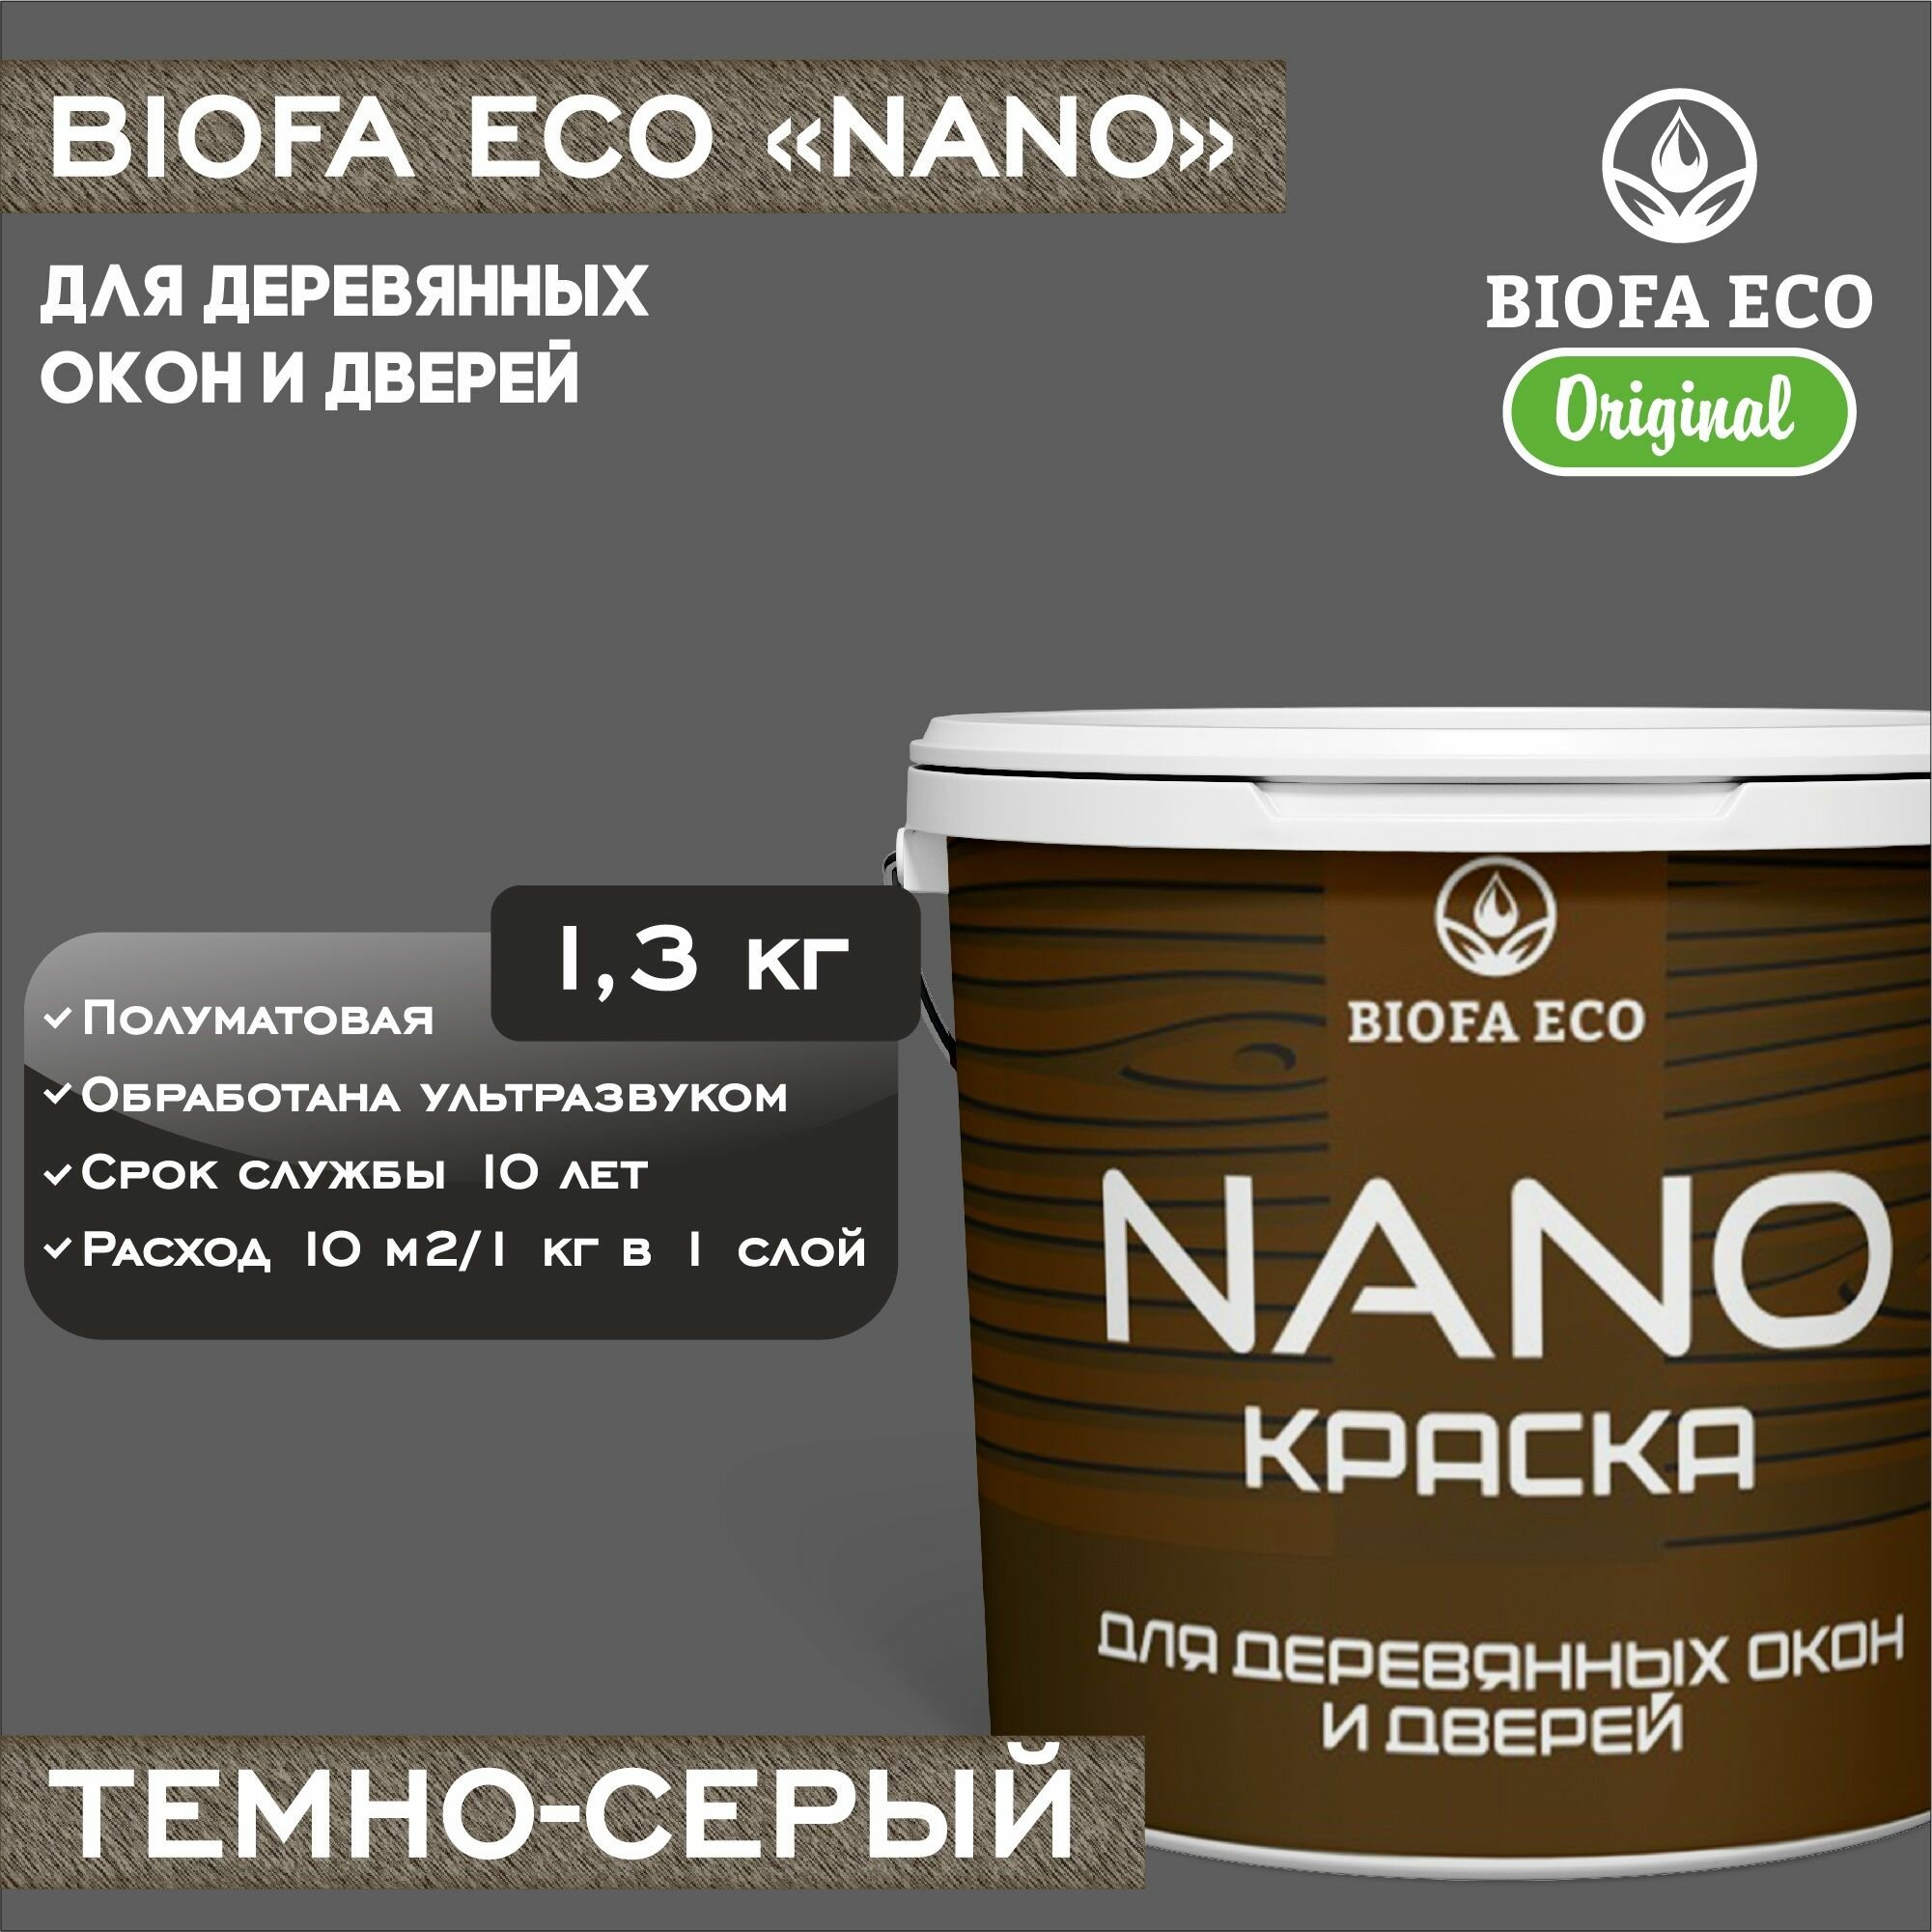 Краска BIOFA ECO NANO для деревянных окон и дверей, укрывистая, полуматовая, цвет темно-серый, 1,3 кг